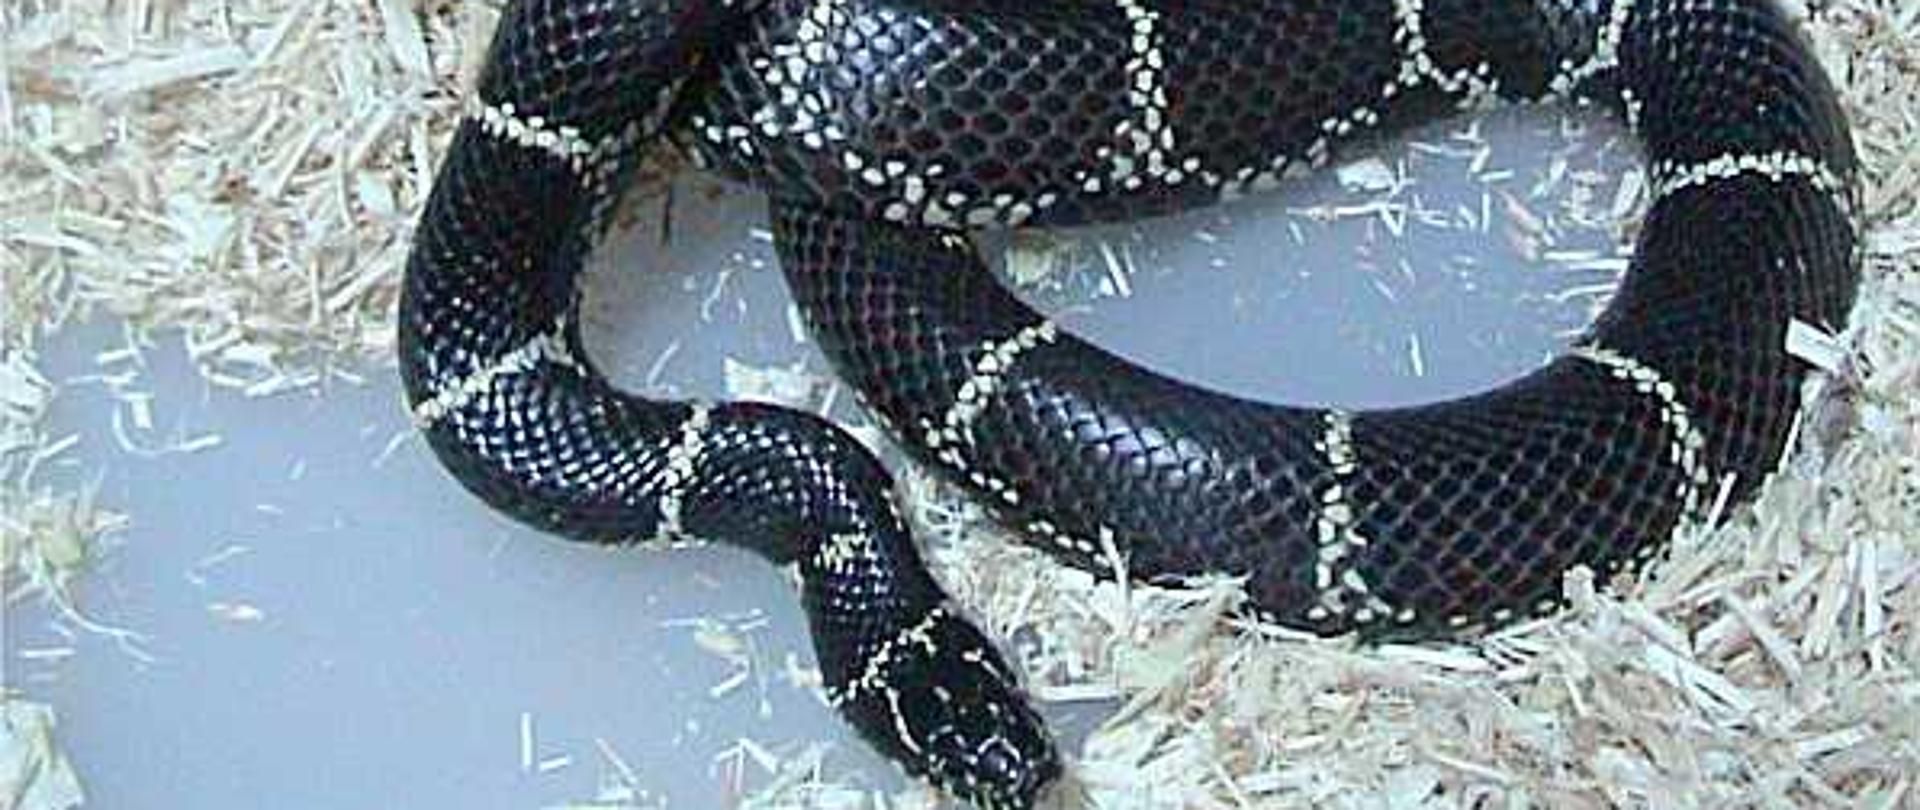 Wąż z gatunku lancetogłów królewski